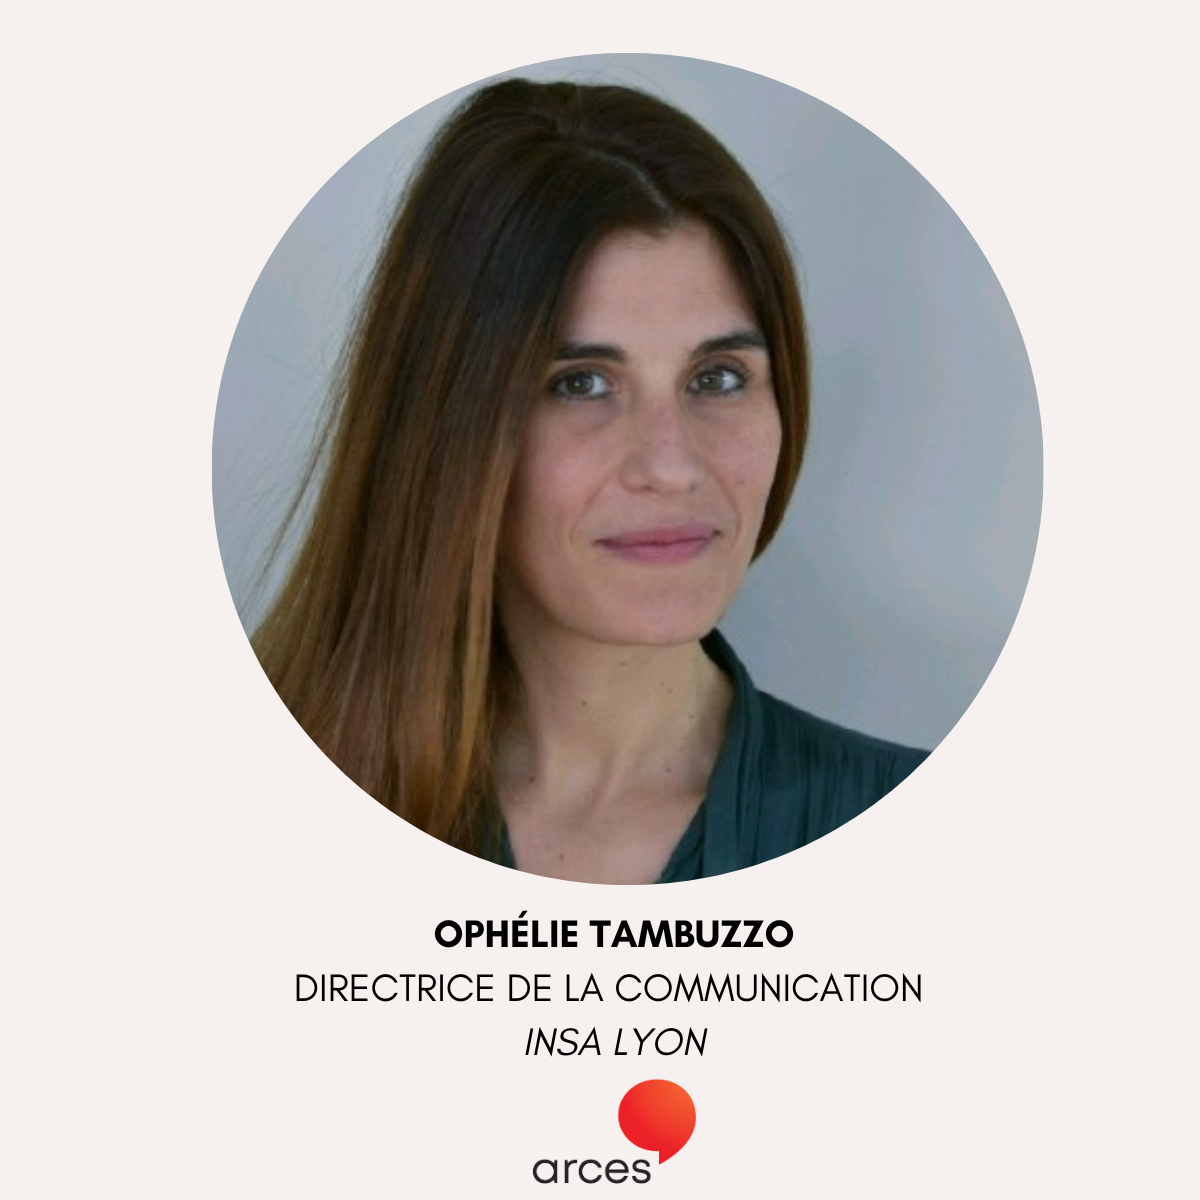 [Portrait adhérente] Ophélie Tambuzzo, directrice de la communication de l'INSA Lyon